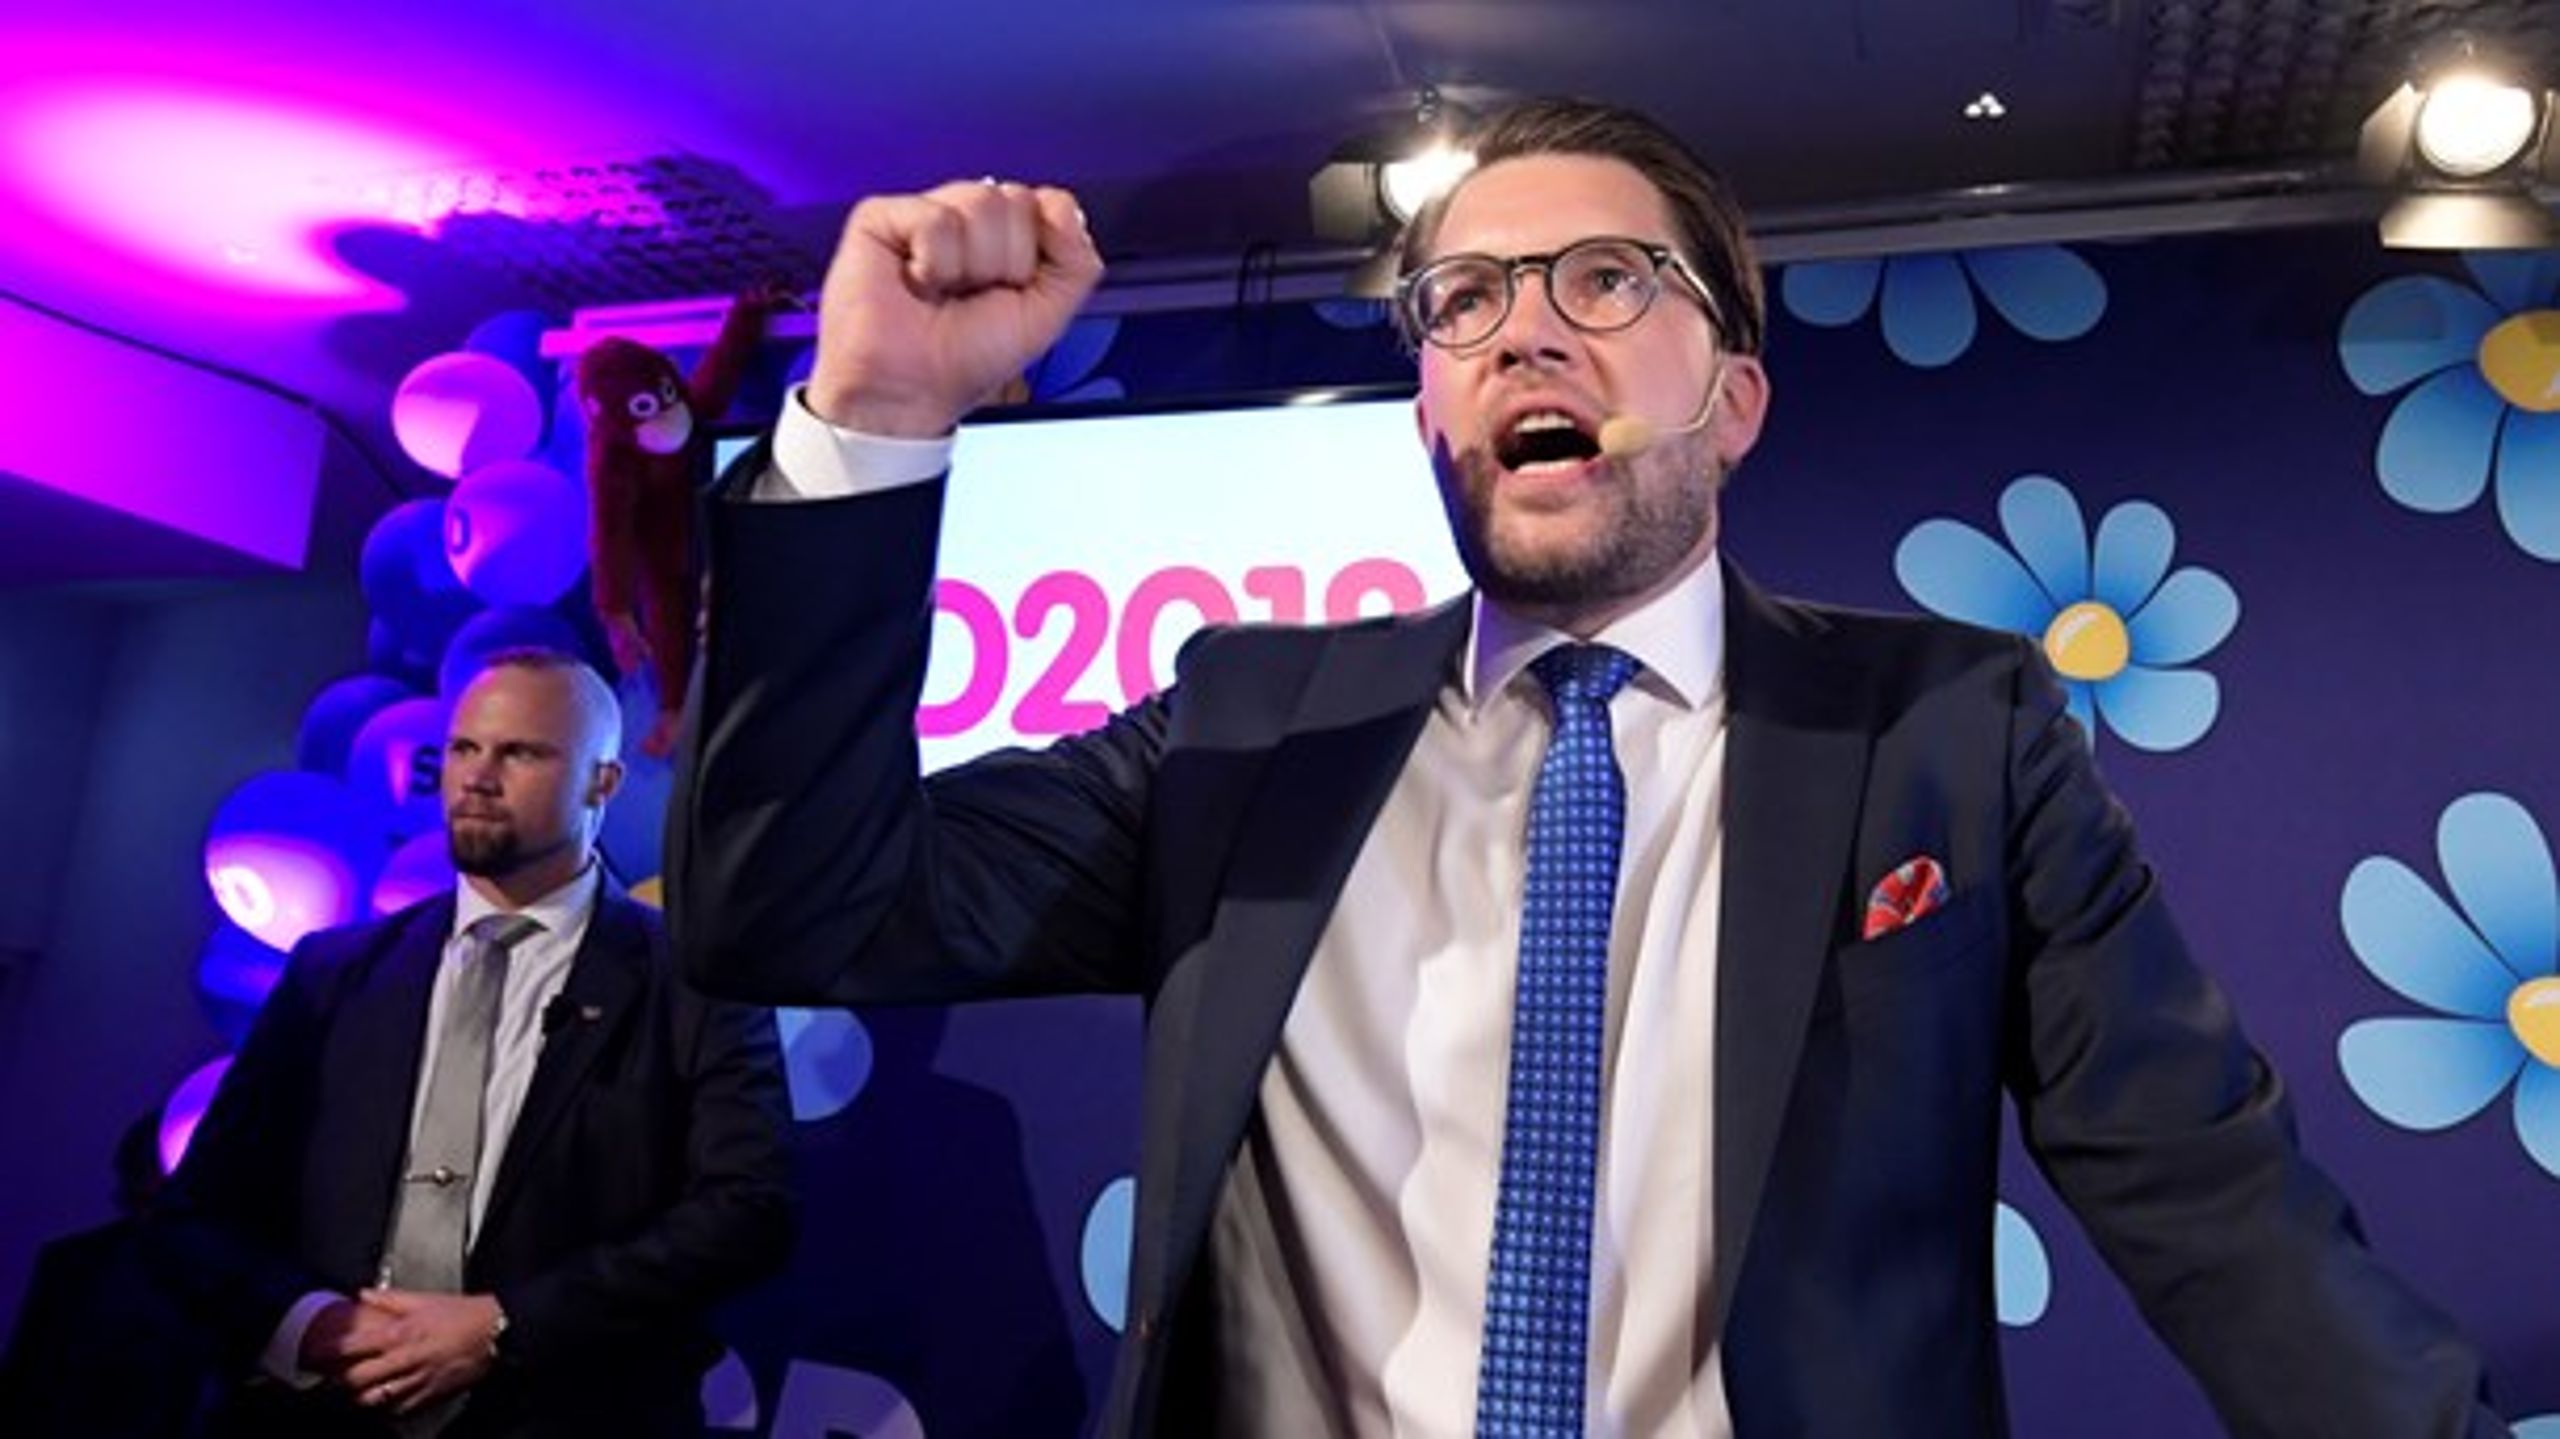 Formanden for Sverigedemokraterne, Jimmie Åkesson, vil med sit partis 62 mandater forsøge at øve indflydelse på den kommende regeringsdannelse, selvom de øvrige partier tidligere har afvist at samarbejde med ham.